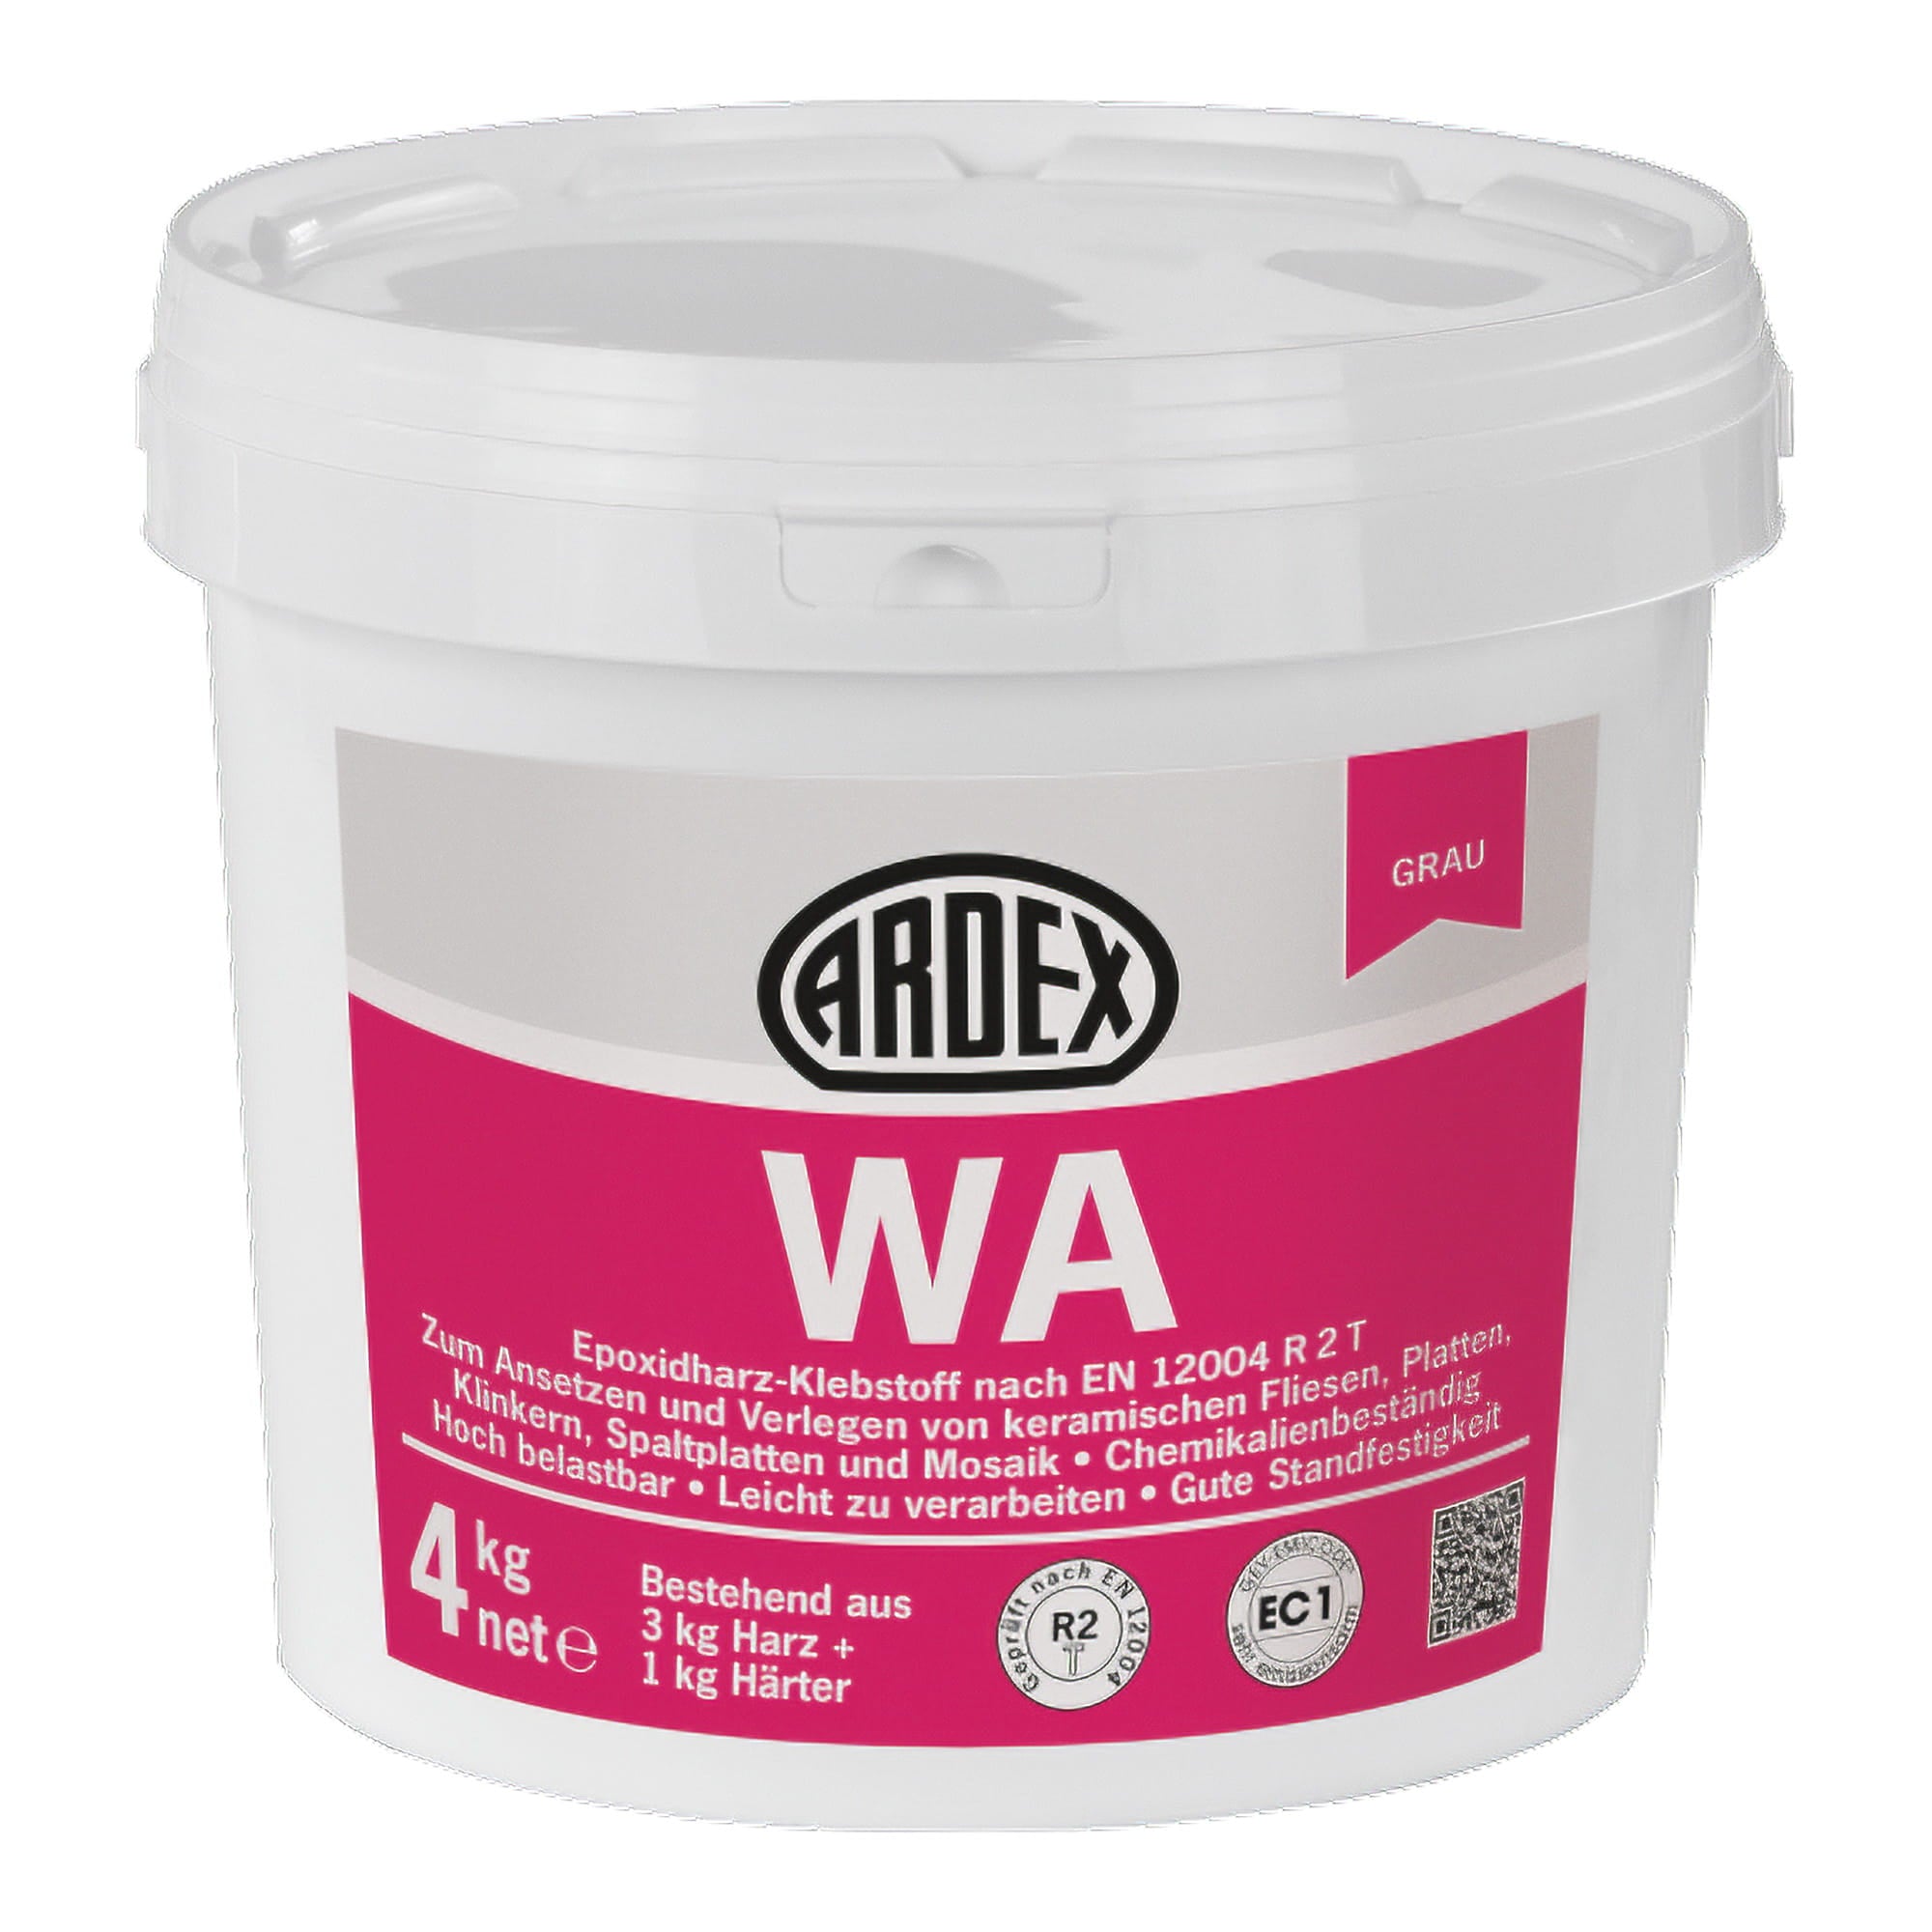 Az ARDEX WA egy kiváló minőségű epoxigyanta alapú ragasztóanyag, mely teljes mértékben megfelel az EN 12004 szabvány R2T követelményeinek.